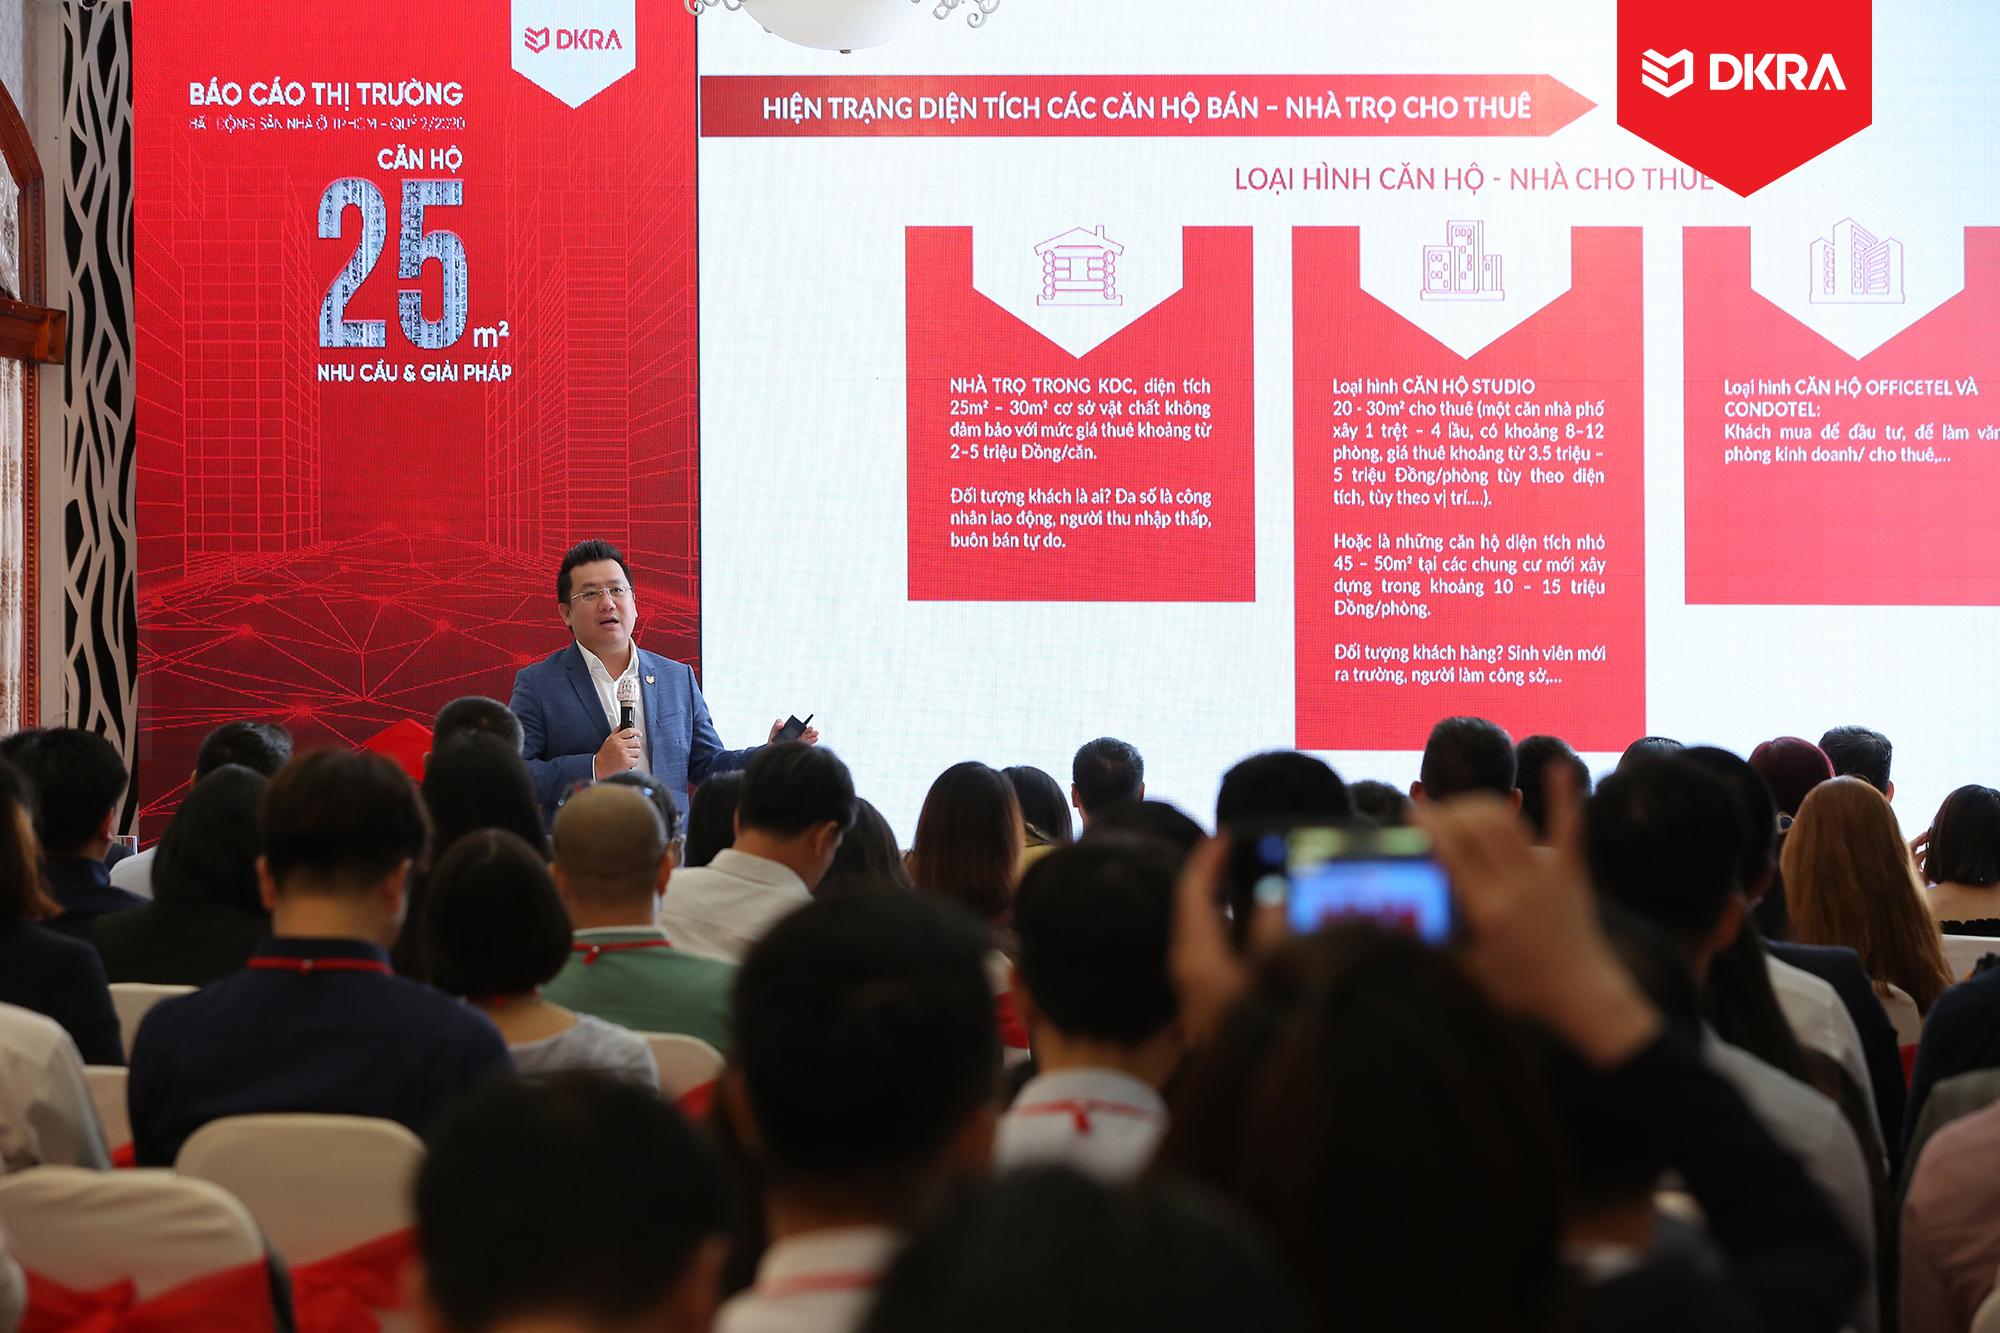 Ông Phạm Lâm - CEO DKRA Vietnam trình bày chủ đề chính “Căn hộ 25m2 - Nhu cầu & giải pháp” tại sự kiện.